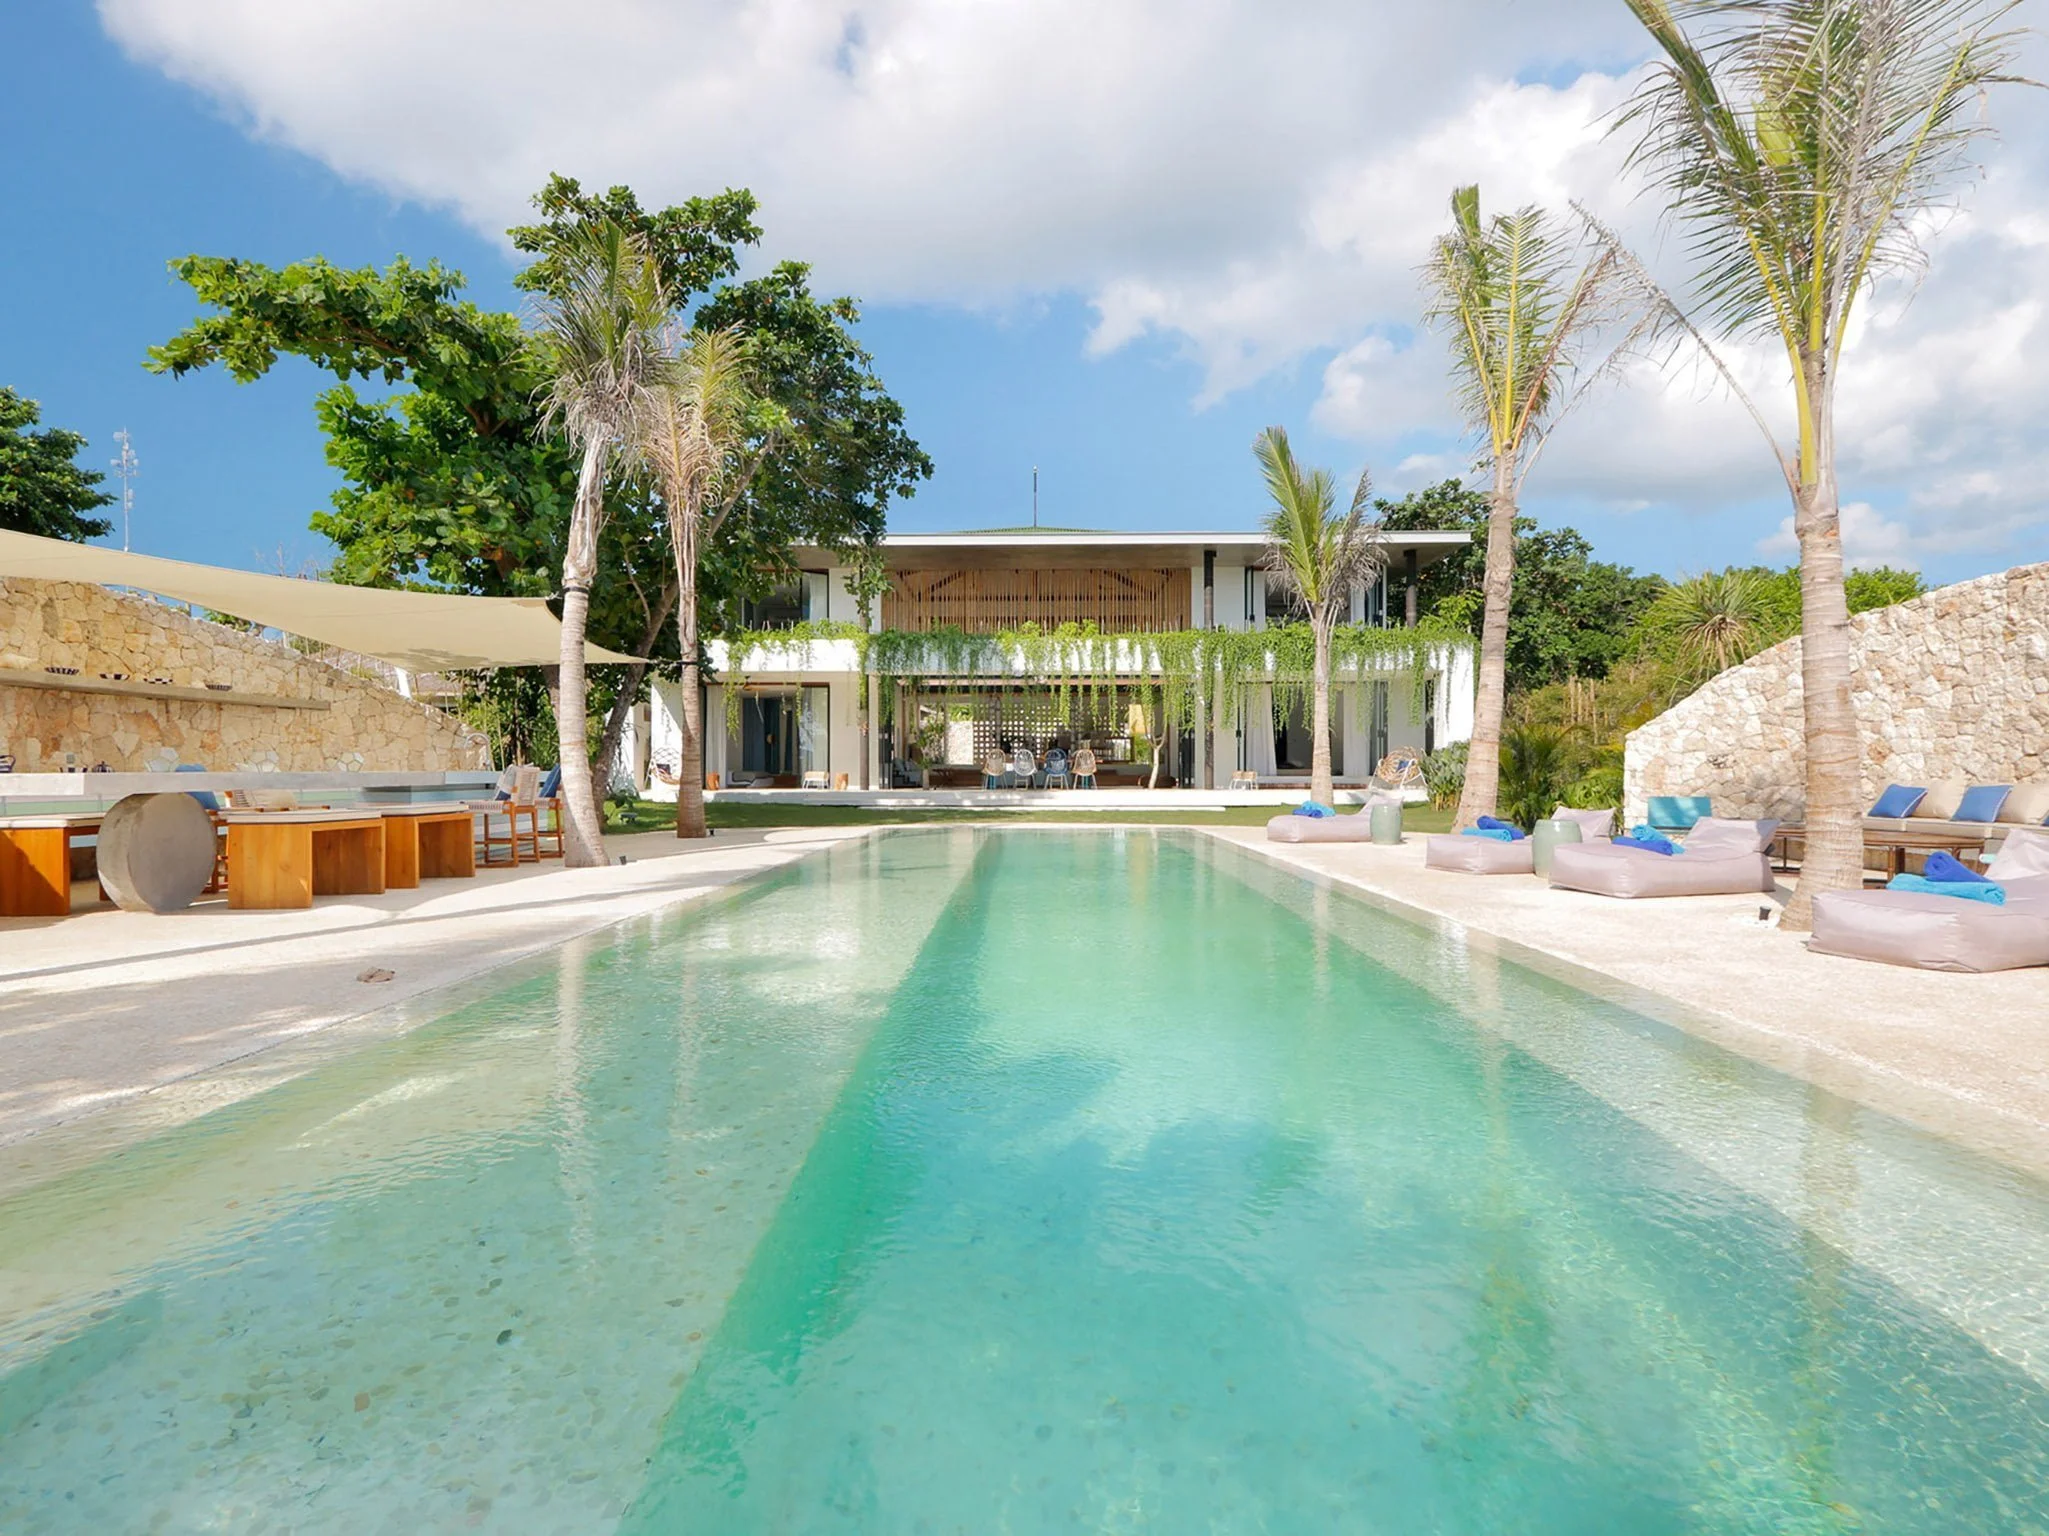 1. villa seascape swimming pool and the villa